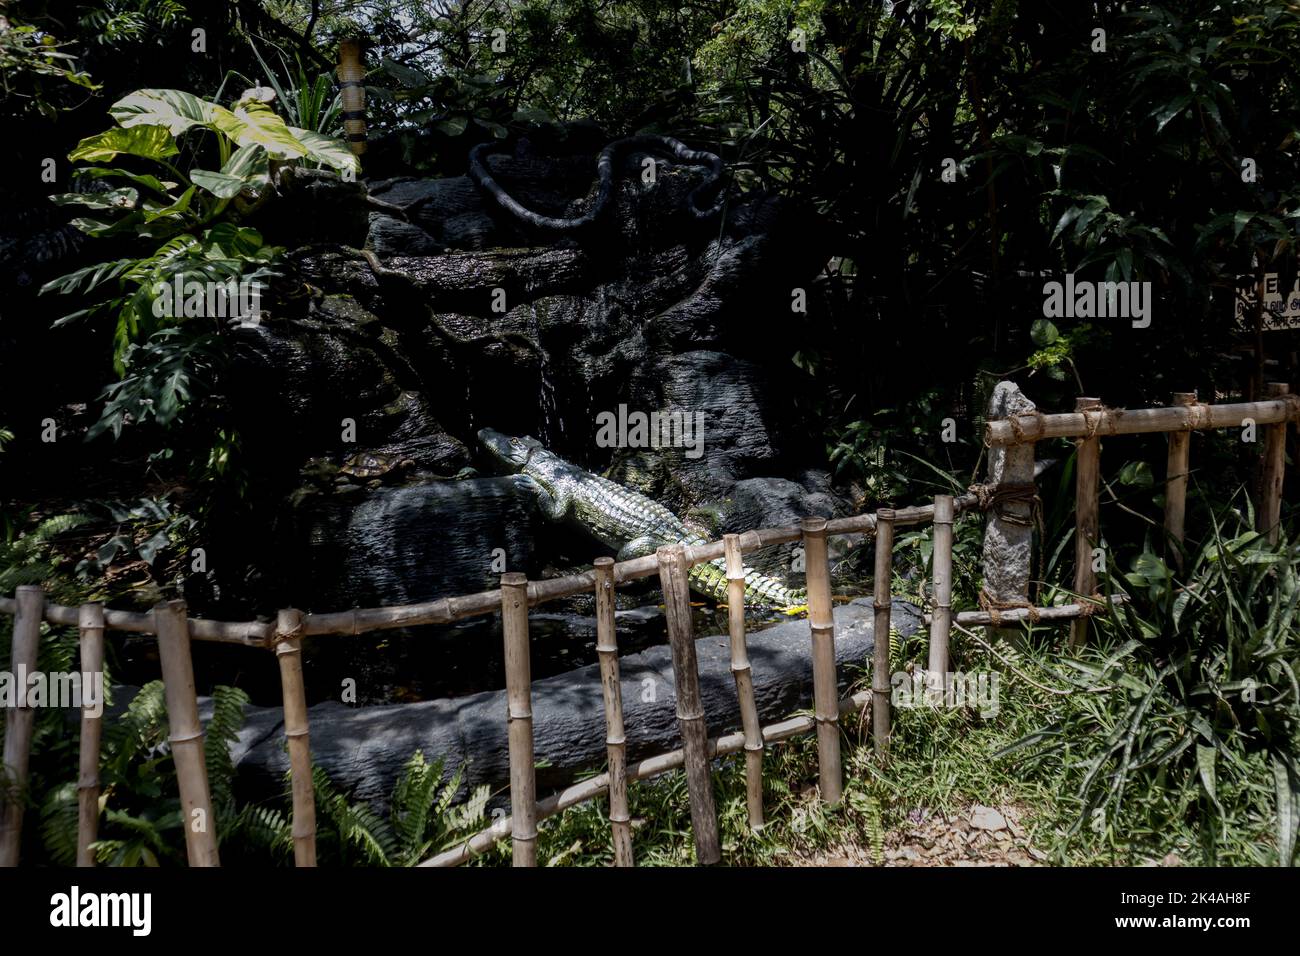 Photo d'une sculpture de crocodile dans une jungle rocheuse du parc de crocodiles de Chennai Banque D'Images